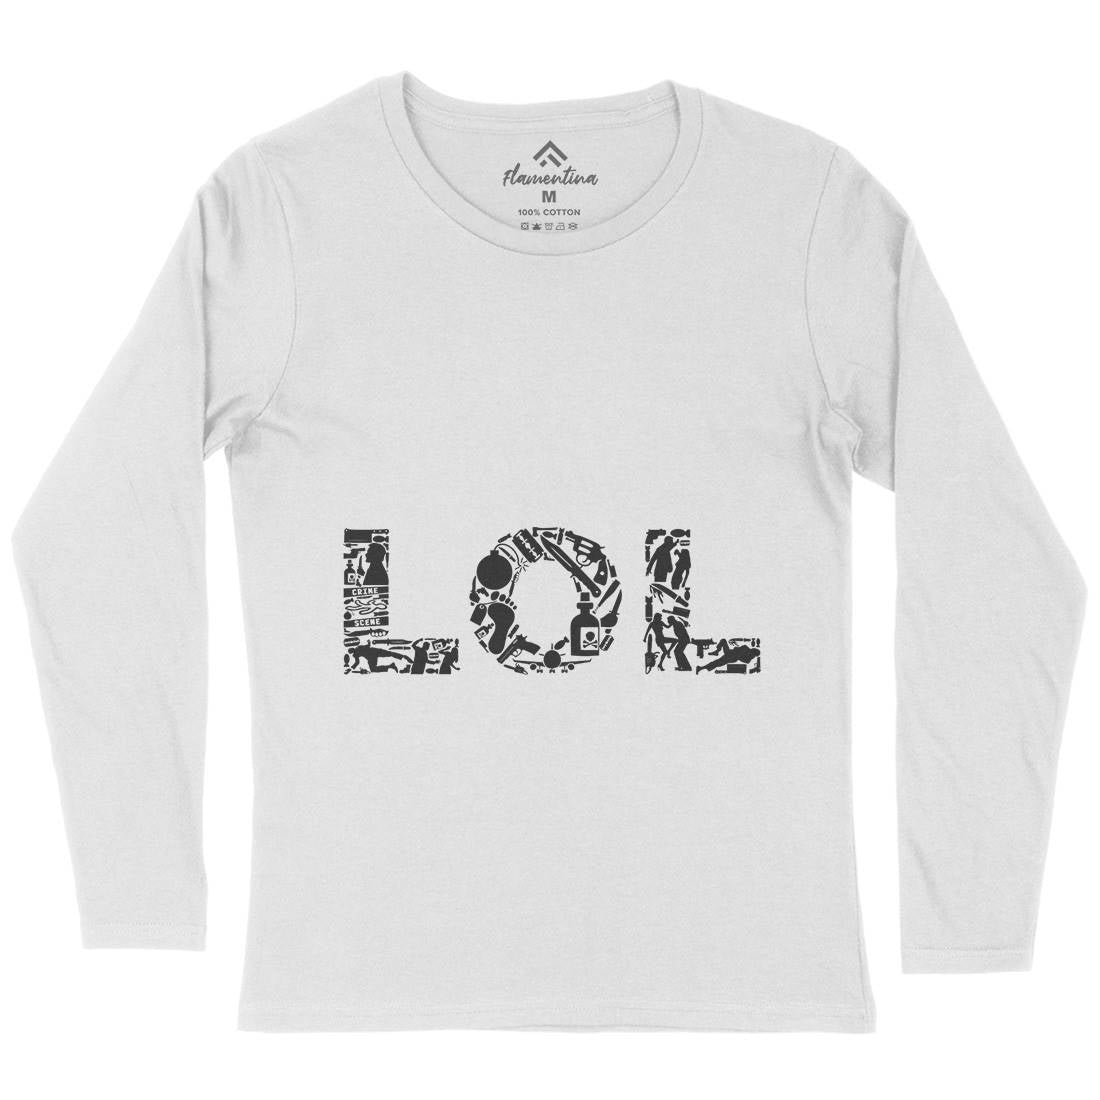 Lol Womens Long Sleeve T-Shirt Retro B060